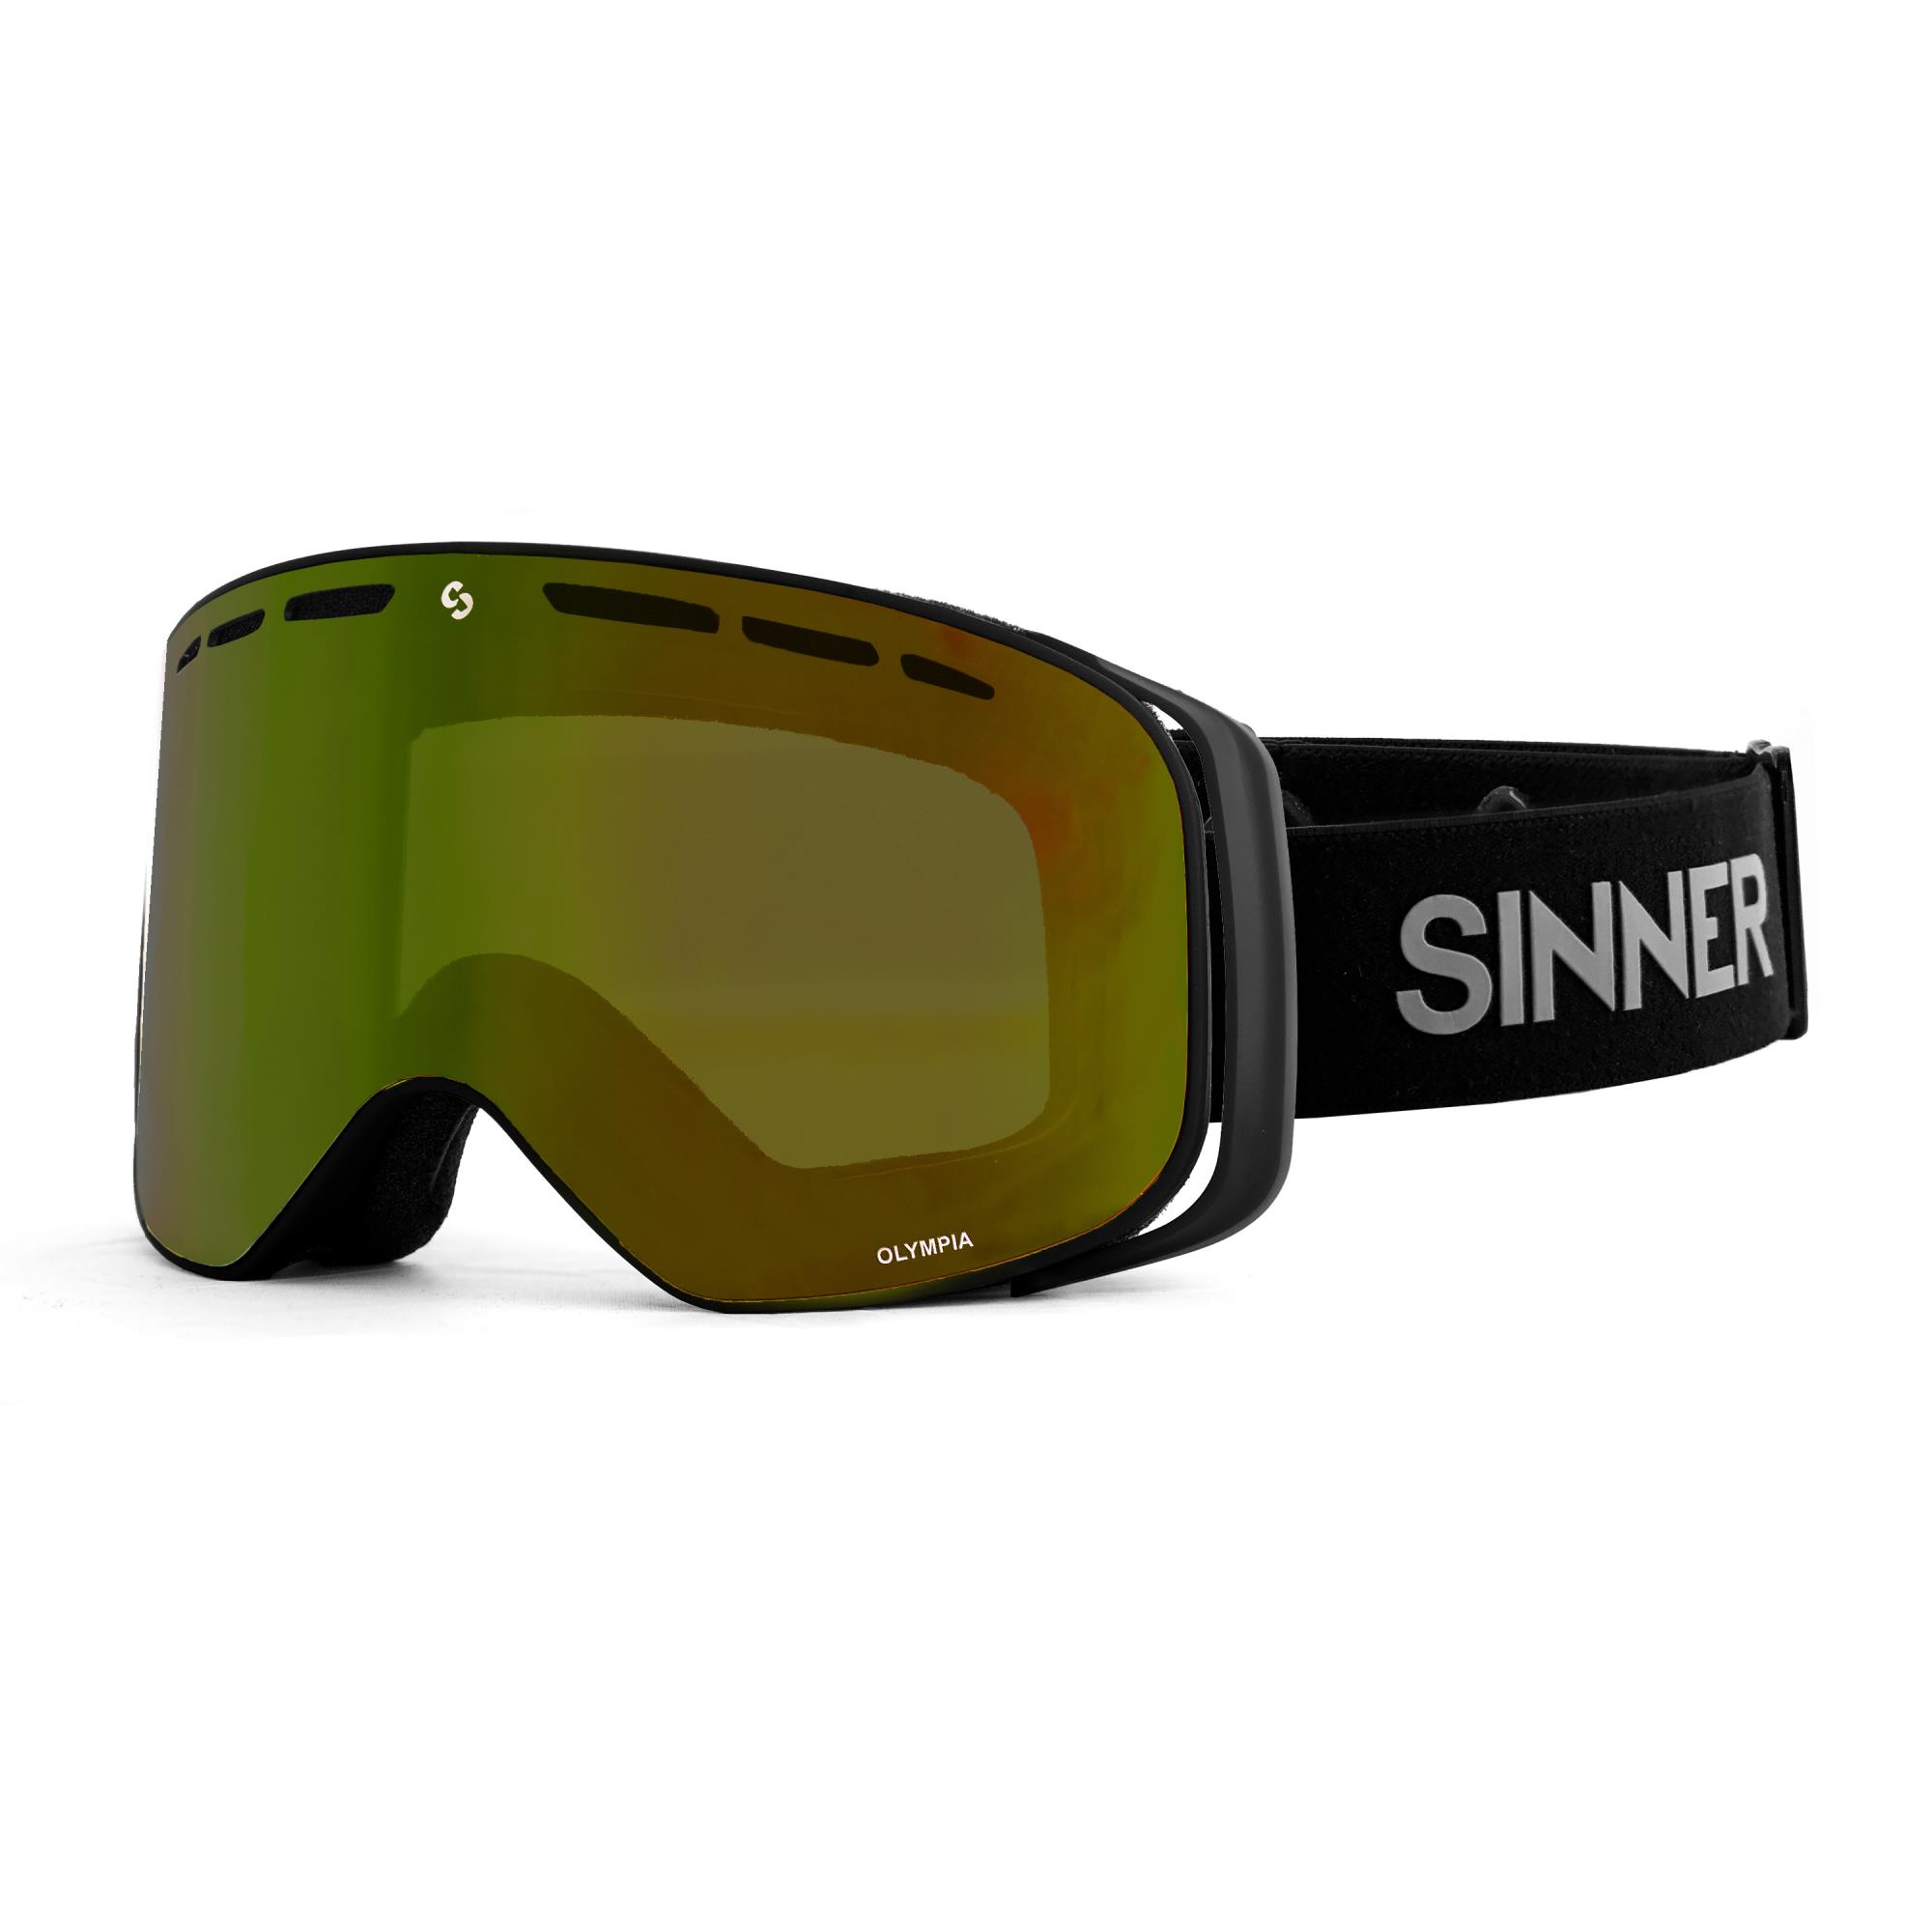 Sinner Ski Bril (Olympia) - www.skizaak.nl